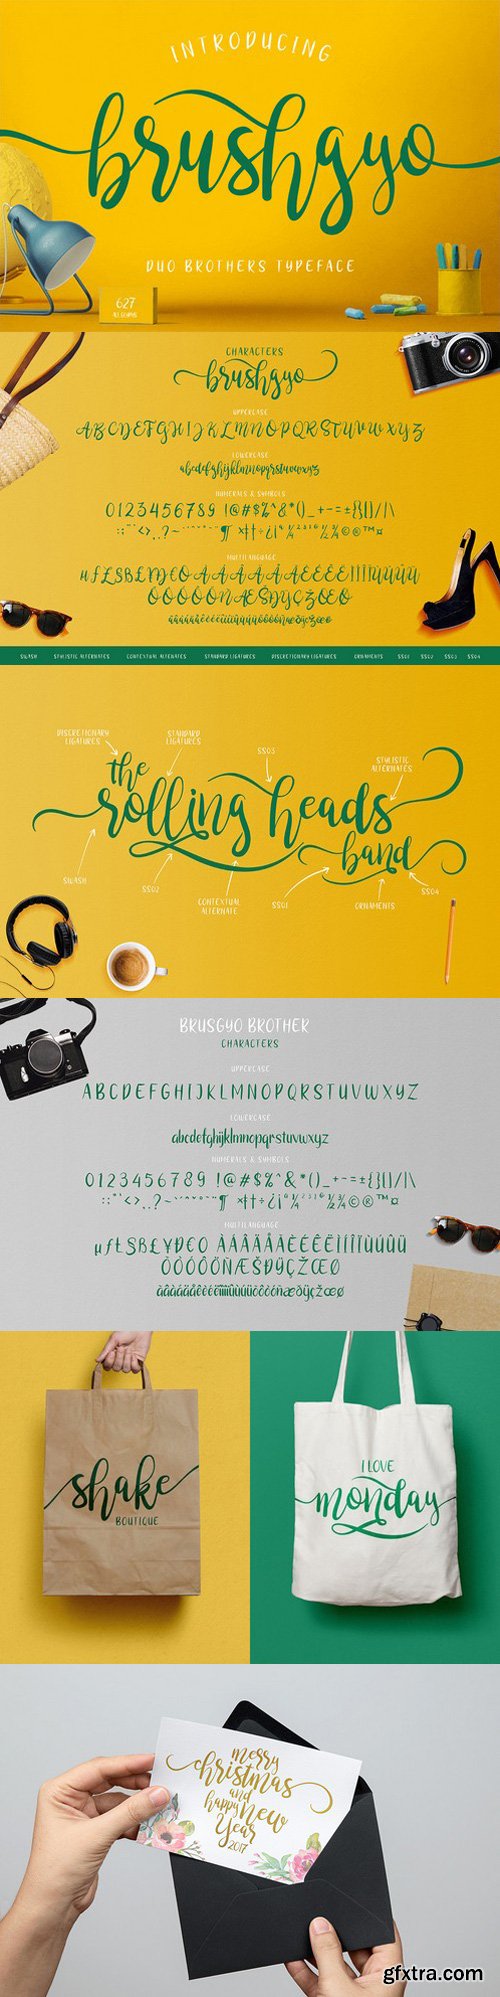 Brushgyo Typeface